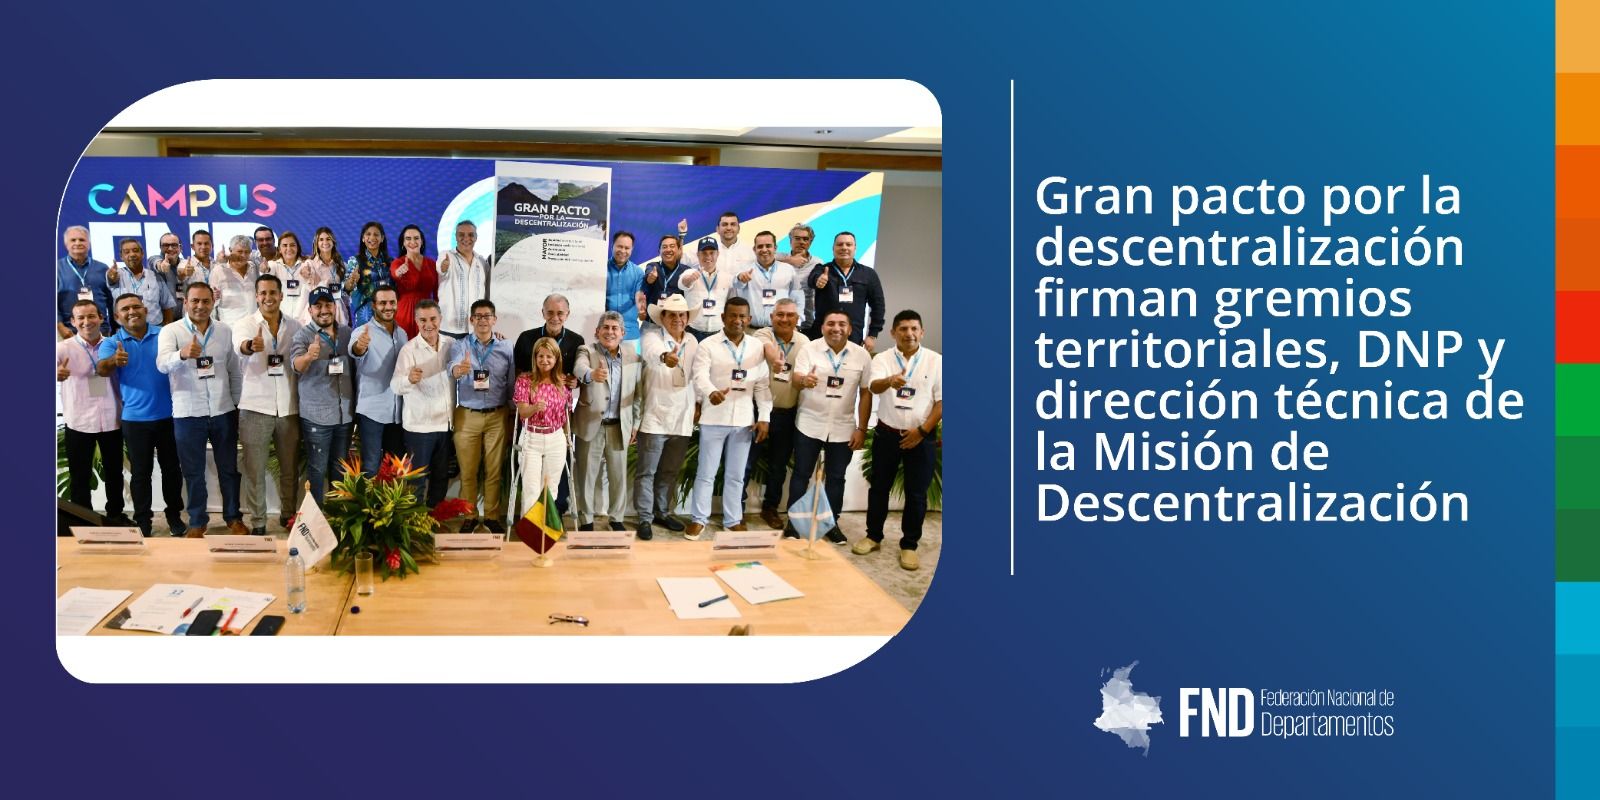 image Gran pacto por la descentralización firman gremios territoriales, DNP y dirección técnica de la Misión de Descentralización